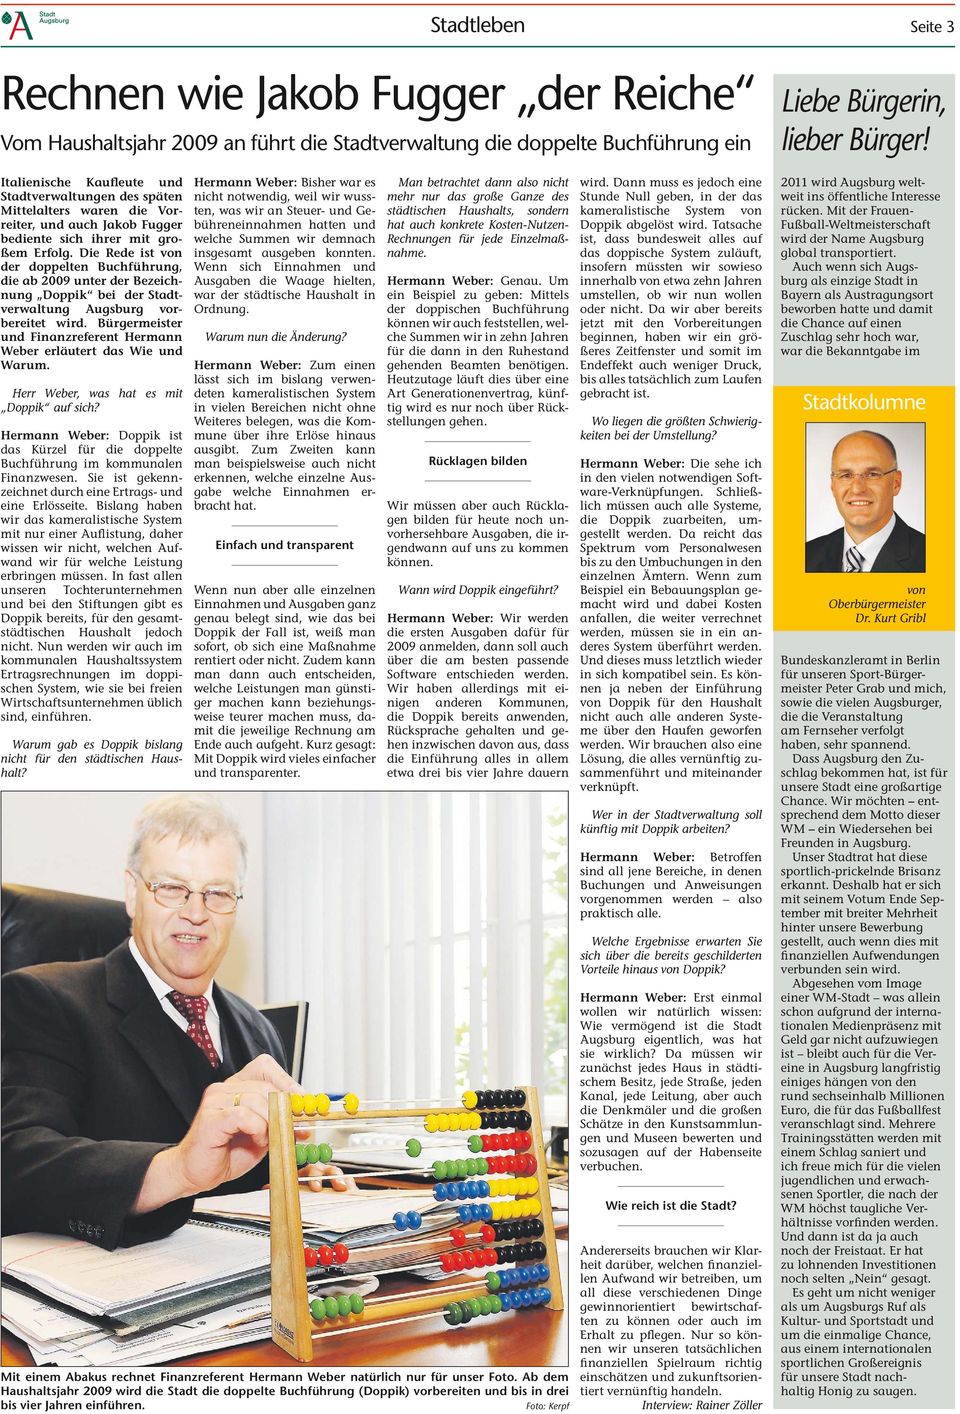 Die Rede ist von der doppelten Buchführung, die ab 2009 unter der Bezeichnung Doppik bei der Stadtverwaltung Augsburg vorbereitet wird.